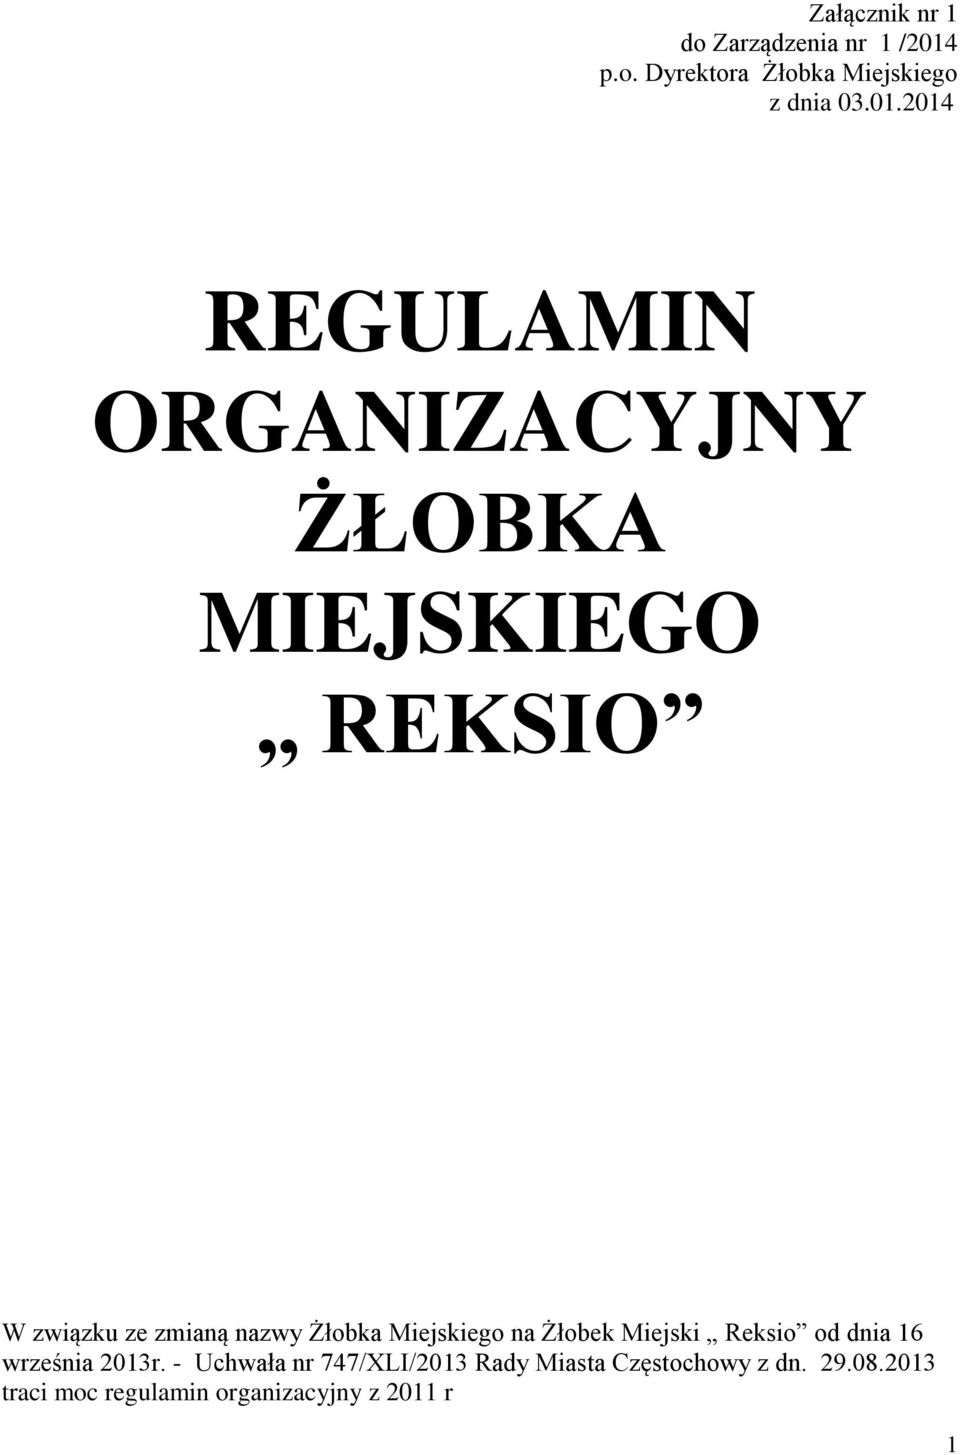 2014 REGULAMIN ORGANIZACYJNY ŻŁOBKA MIEJSKIEGO REKSIO W związku ze zmianą nazwy Żłobka